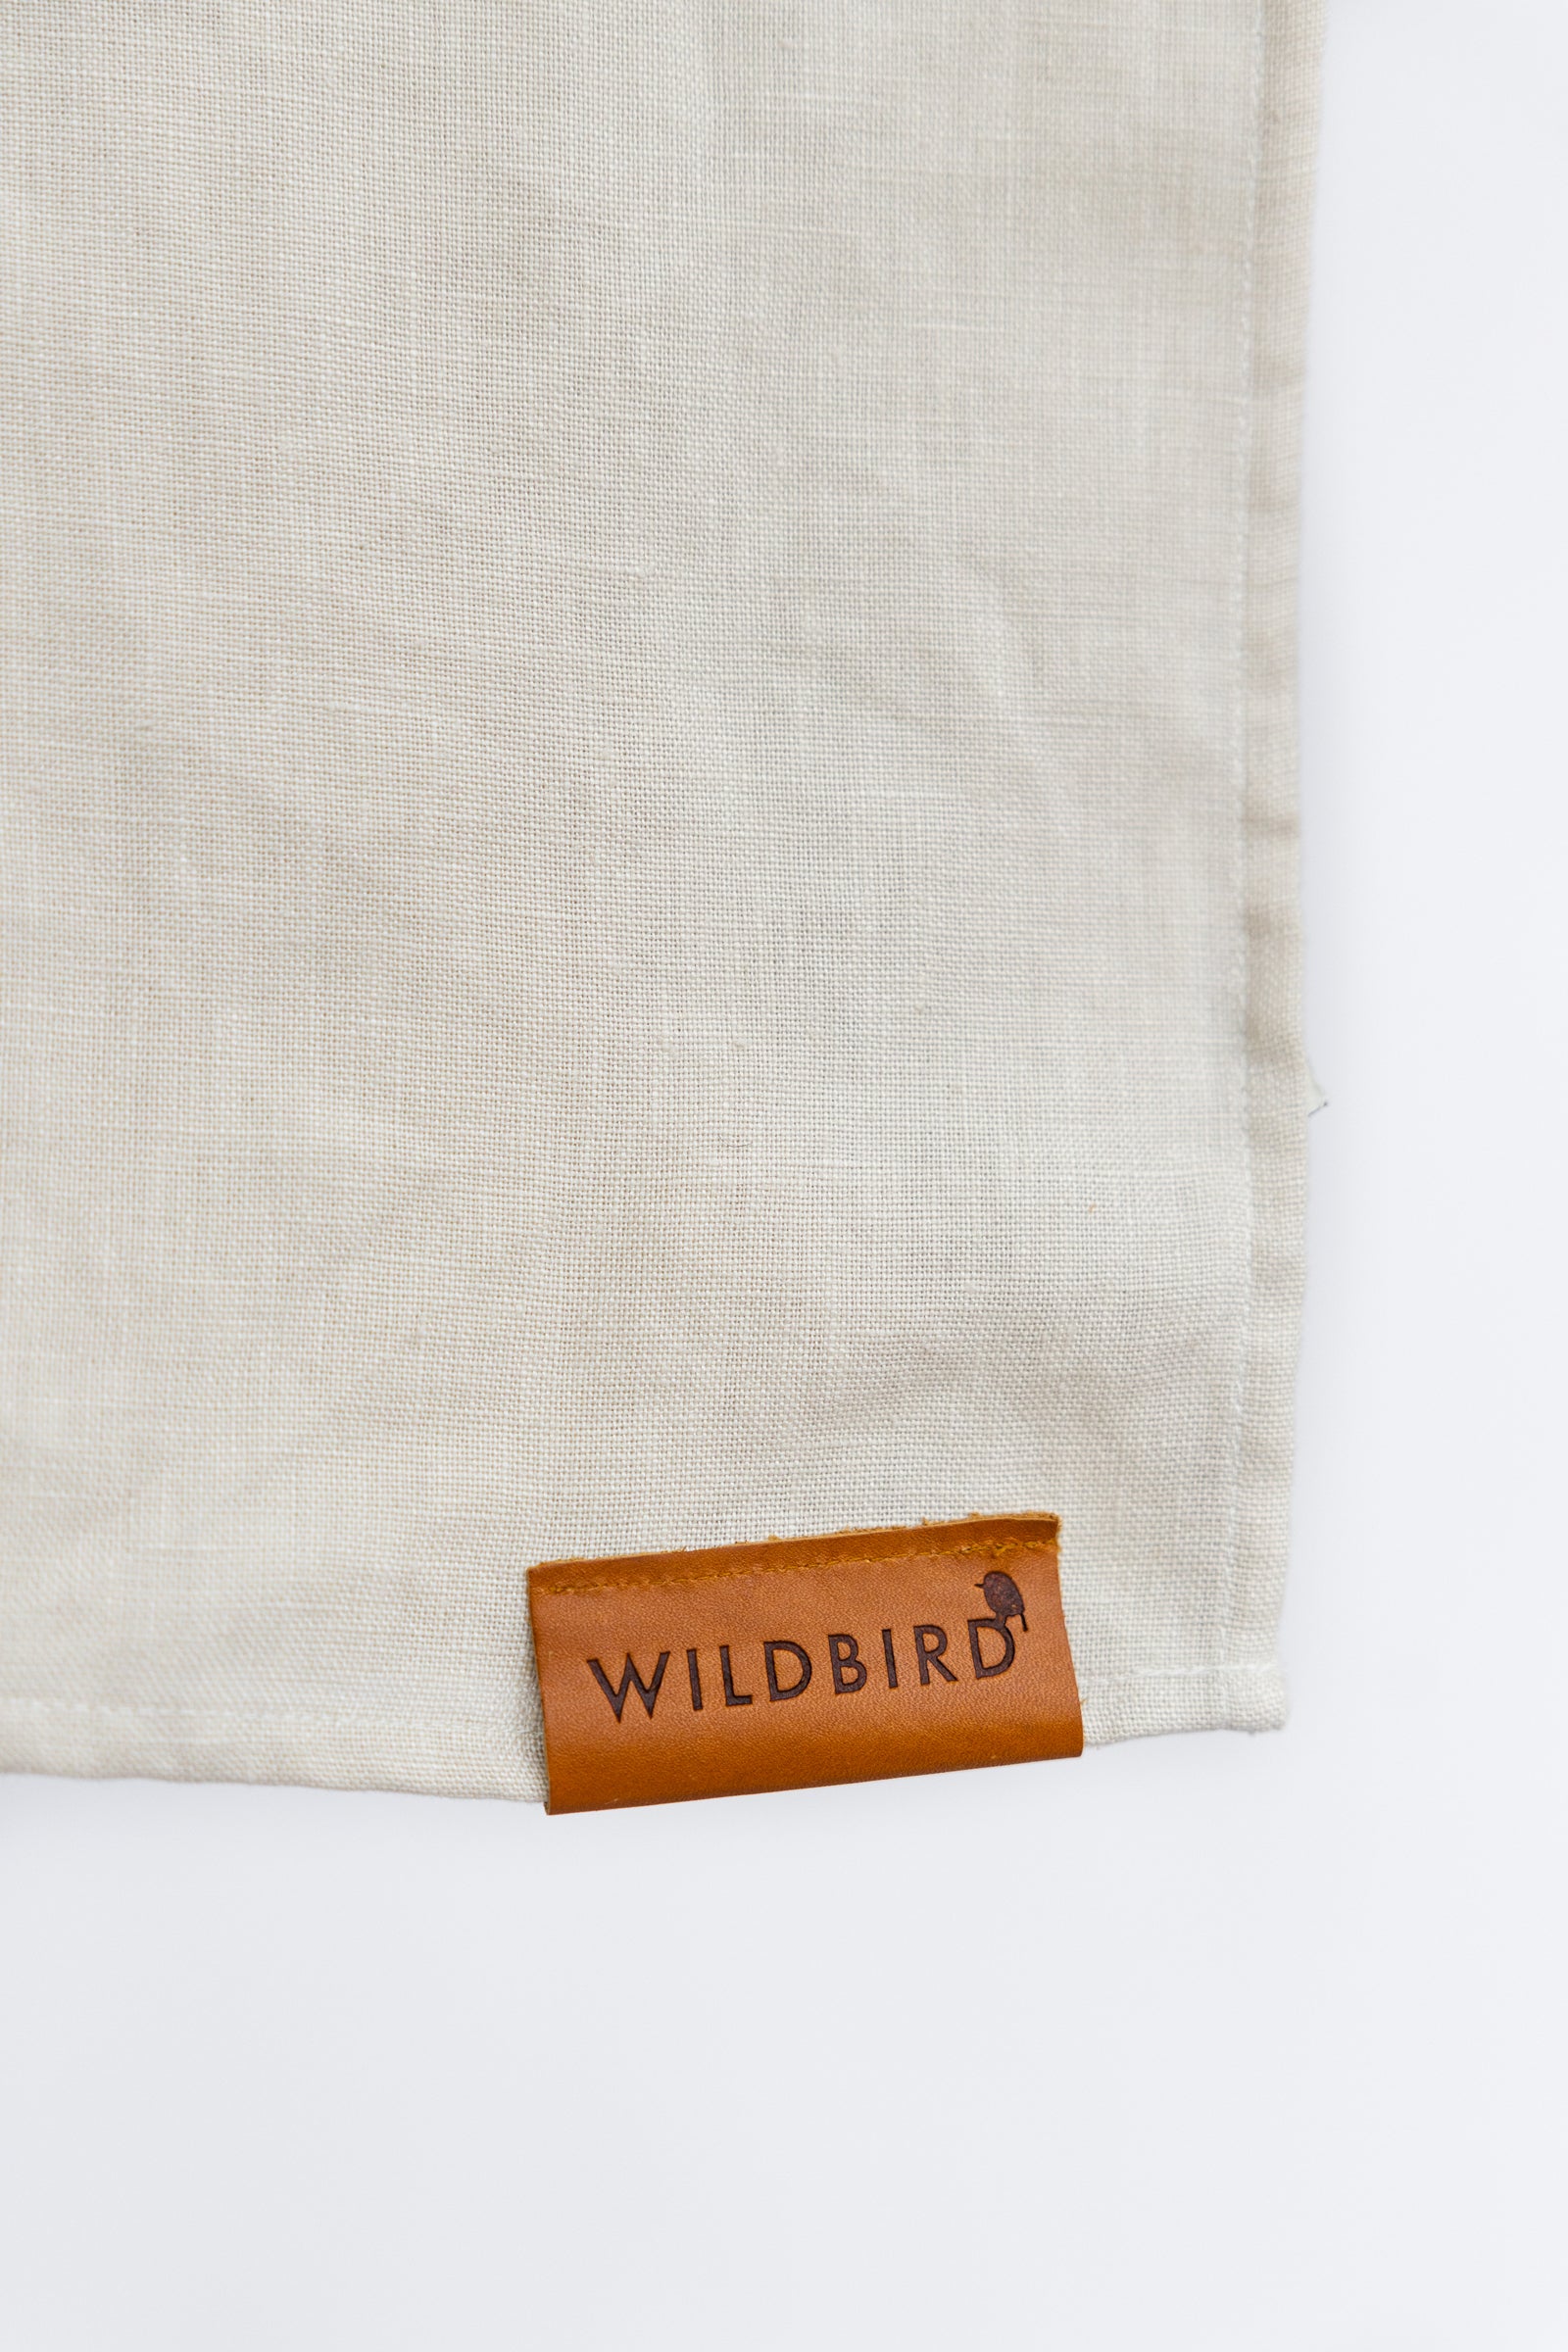 Wildbird-print linen runner